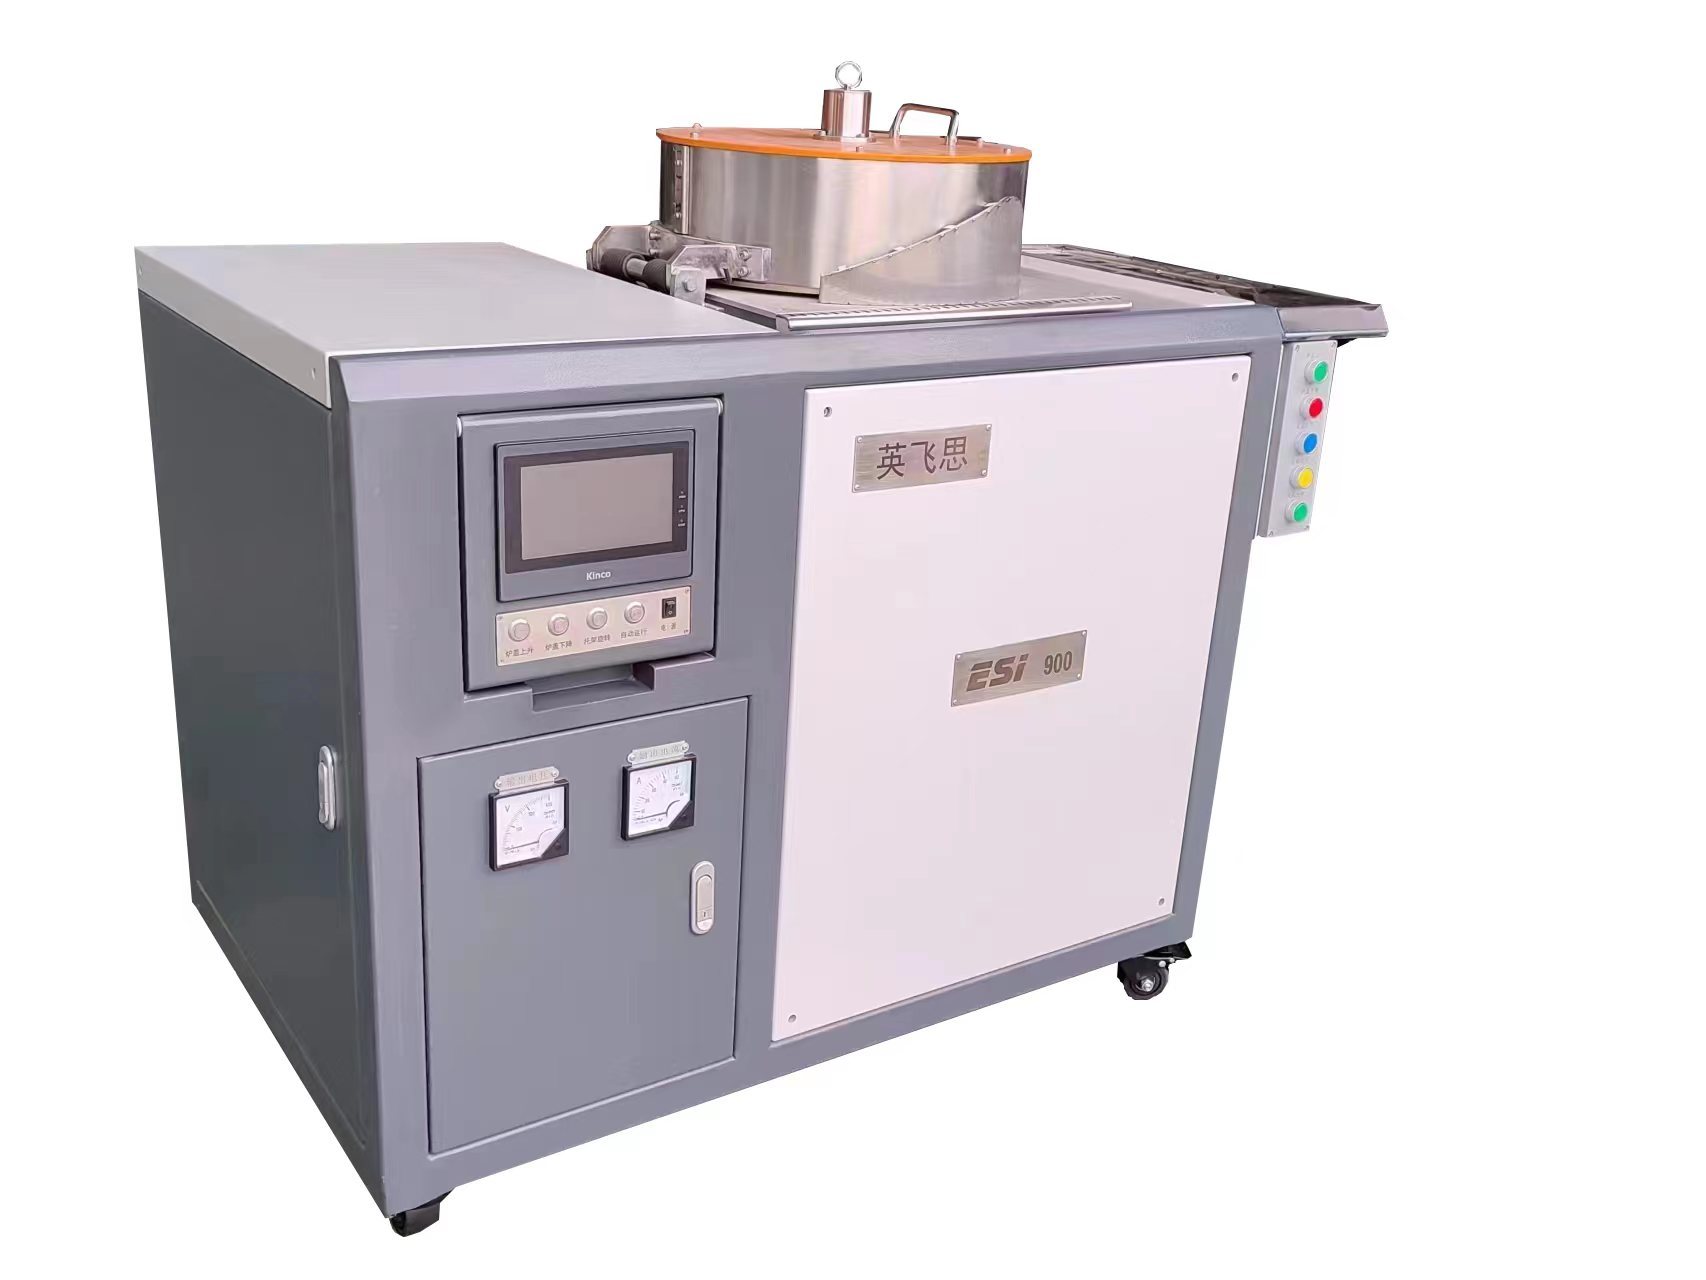 X荧光光谱分析专用全自动熔样机ESI-900型